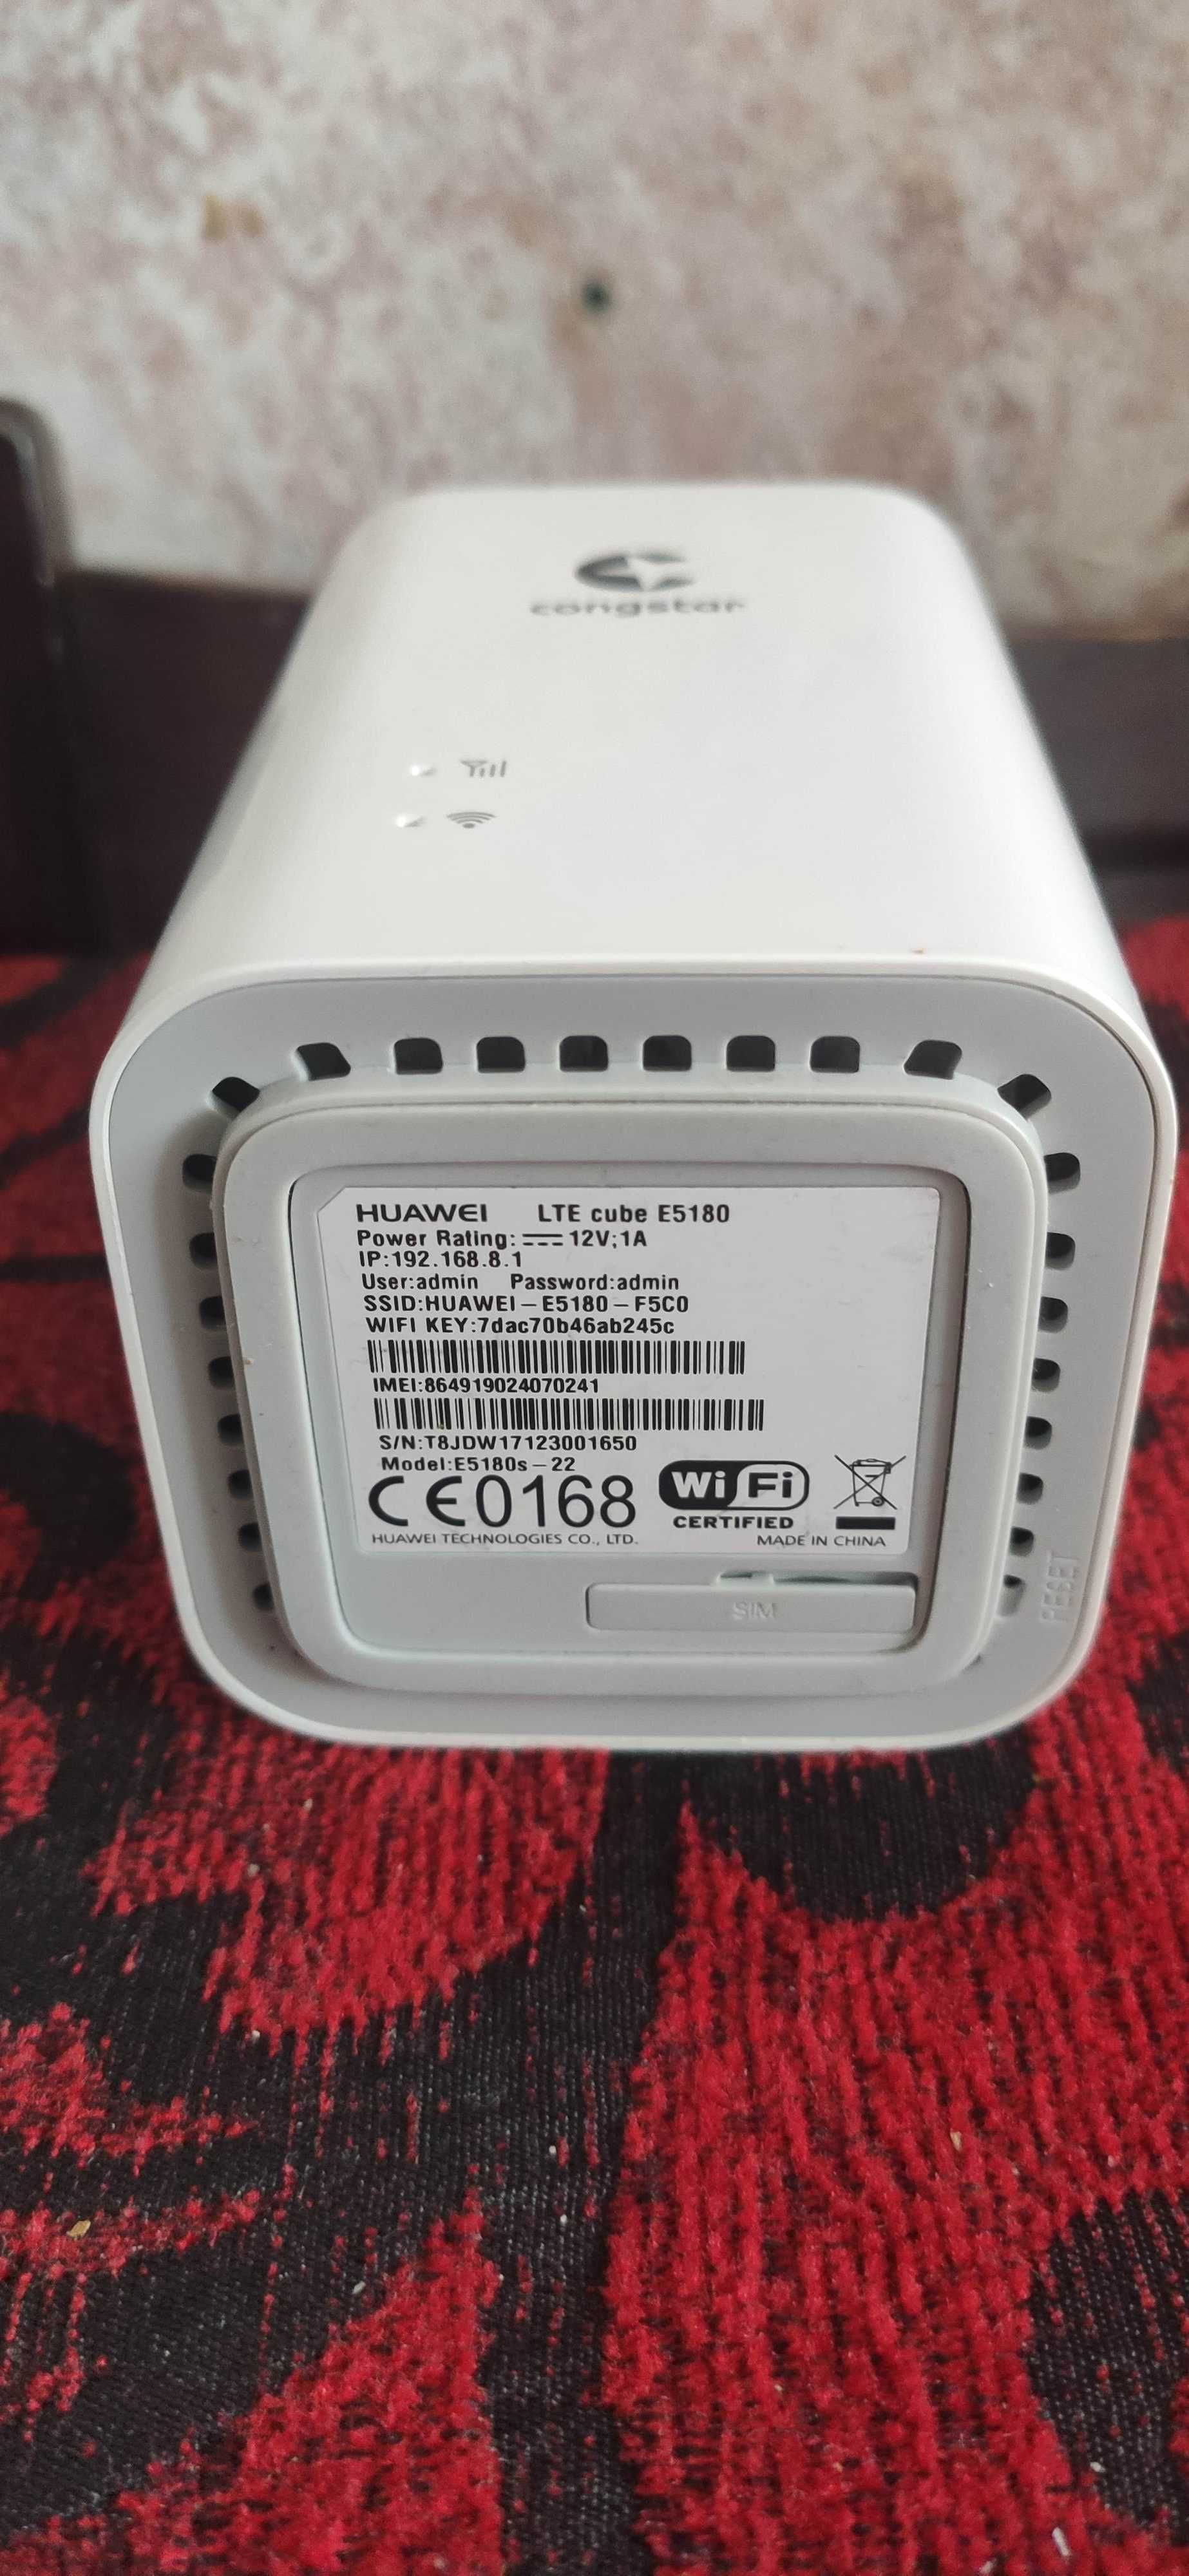 Router 4G_5G LTE cu SIM Huawei E5180S, HUAWEI B818,Dual Band, Gigabit